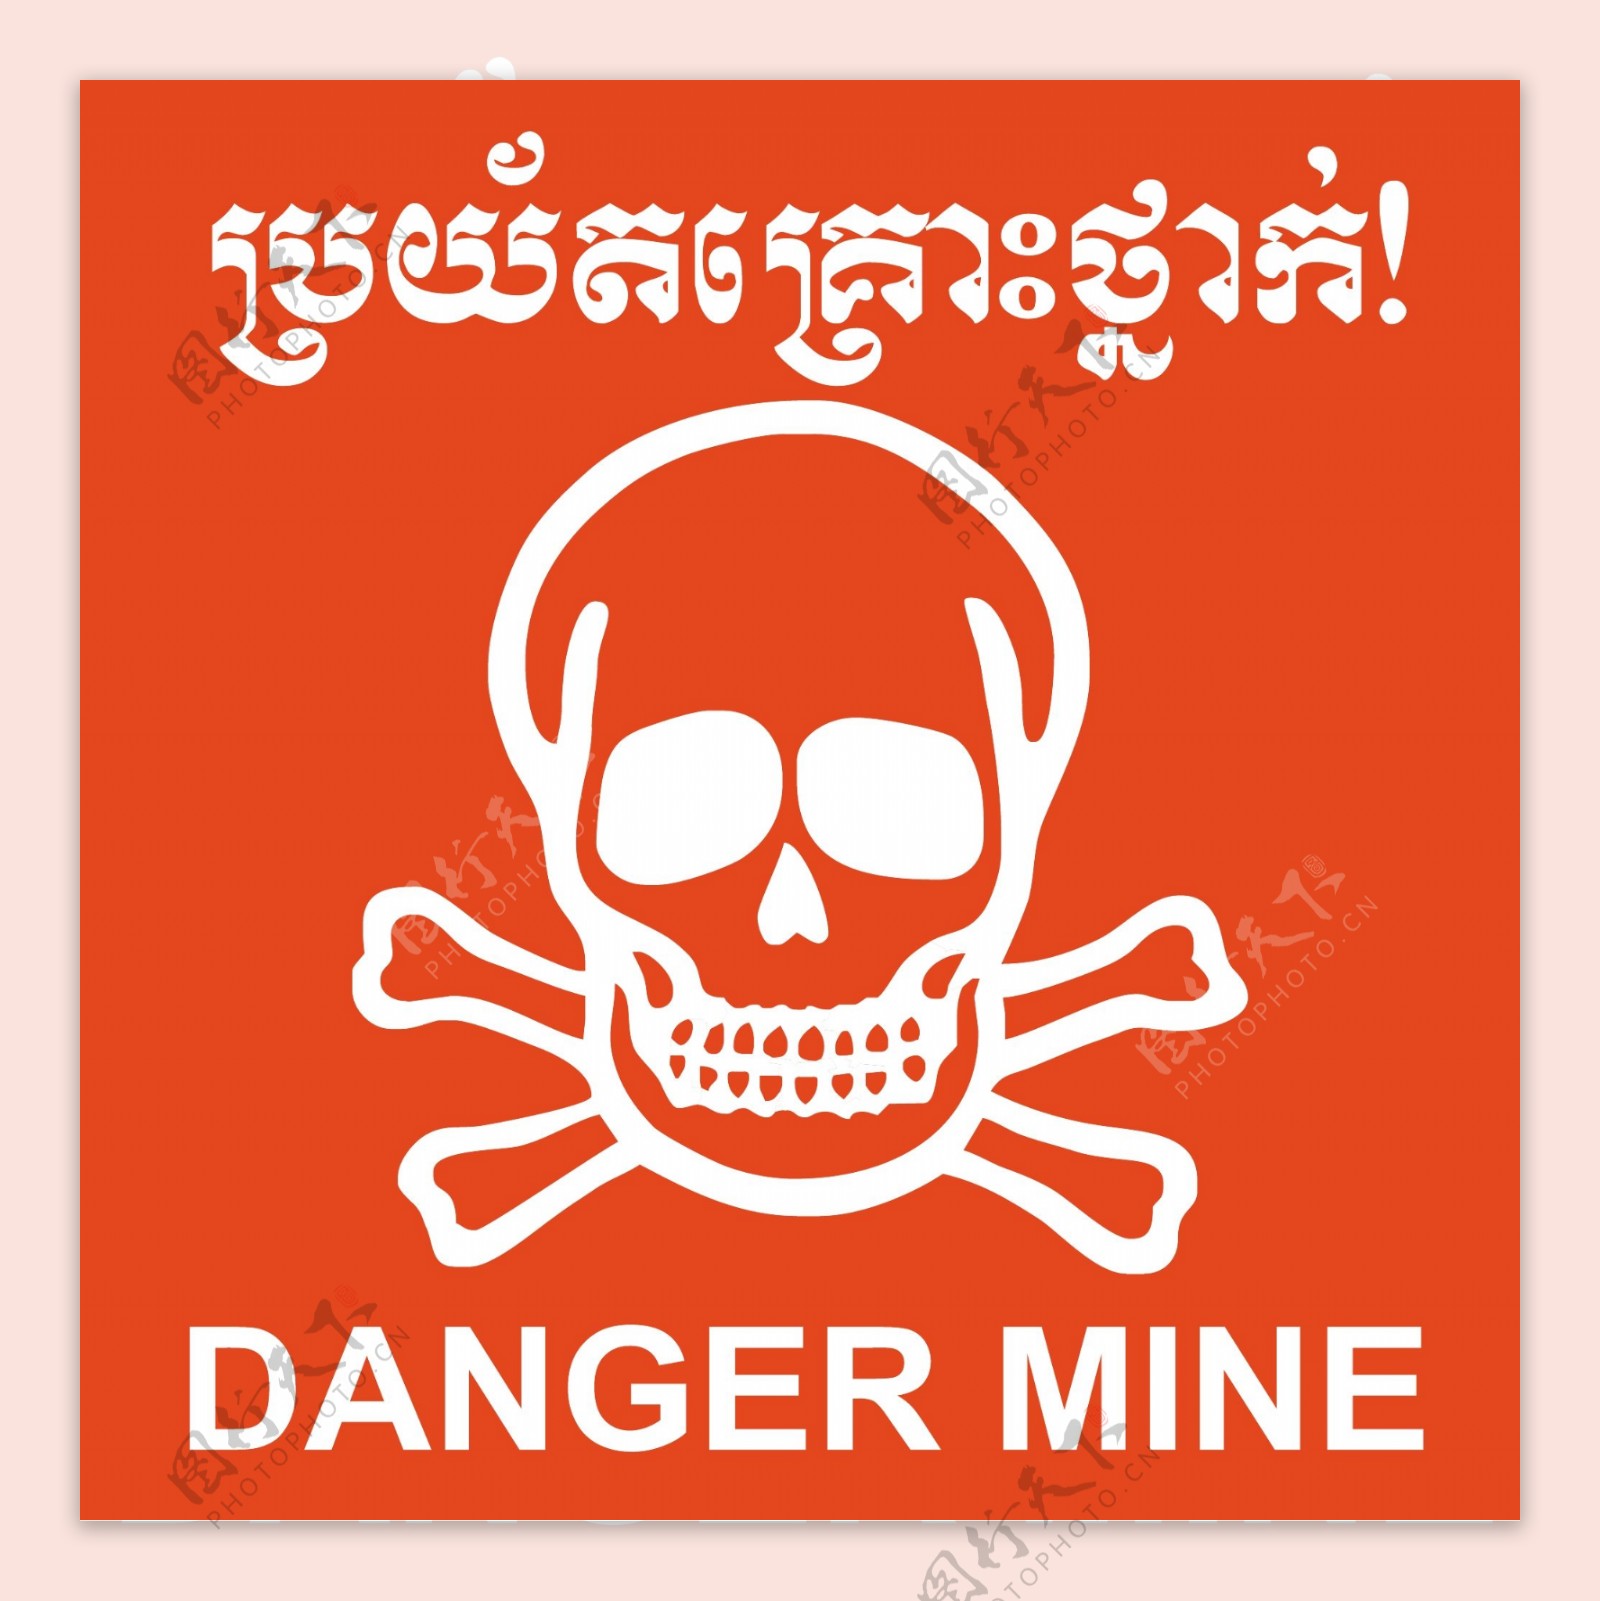 柬埔寨危险的矿井